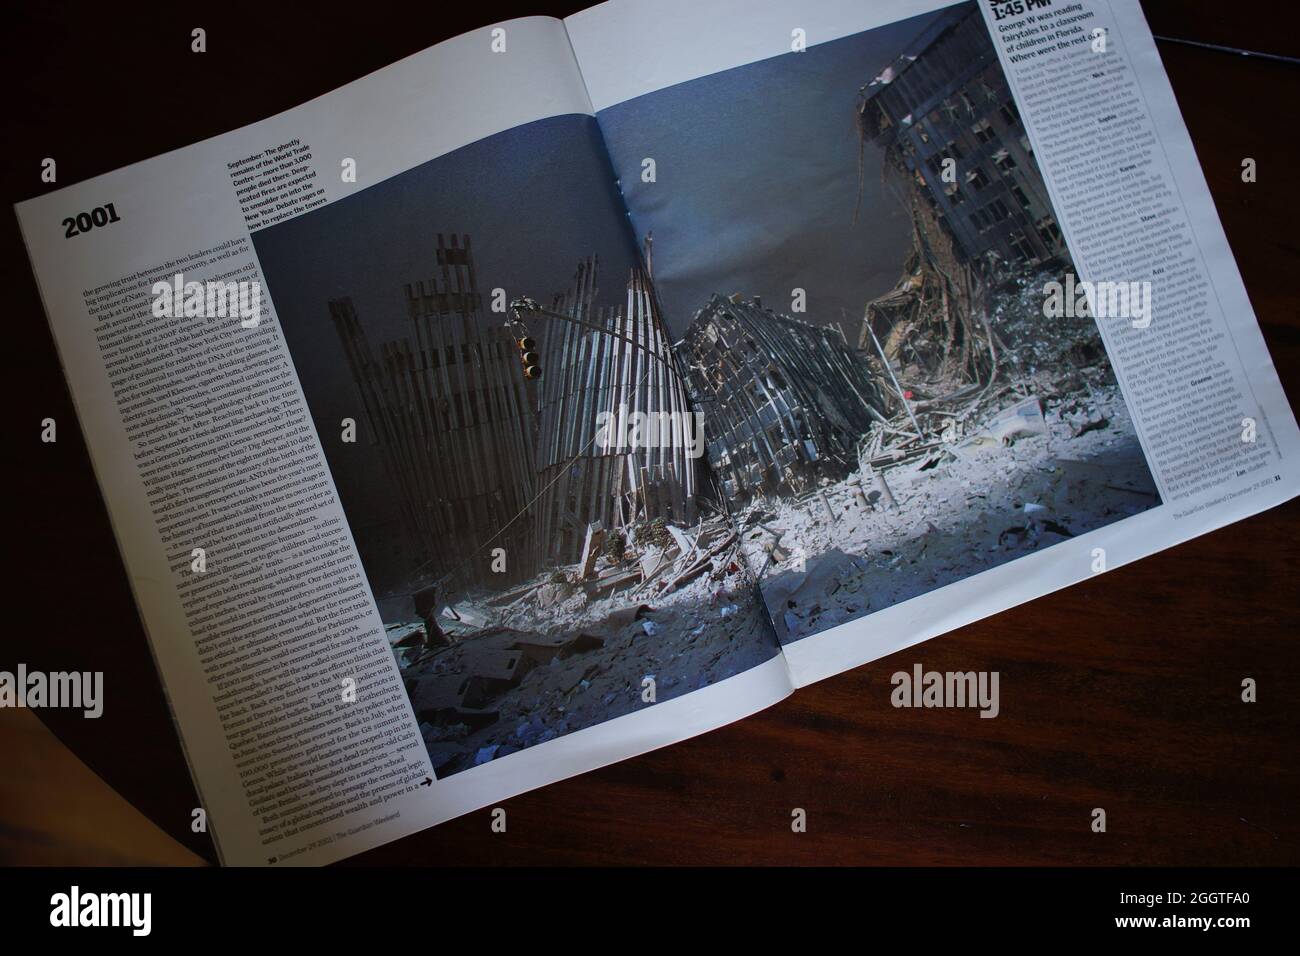 11 septembre 2001 - article de magazine avec photo montrant les restes couvants du World Trade Center, Manhattan, New York. Supplément week-end journal gardien : 2001, l'année en images avec essai par Alan Rusbridger Banque D'Images